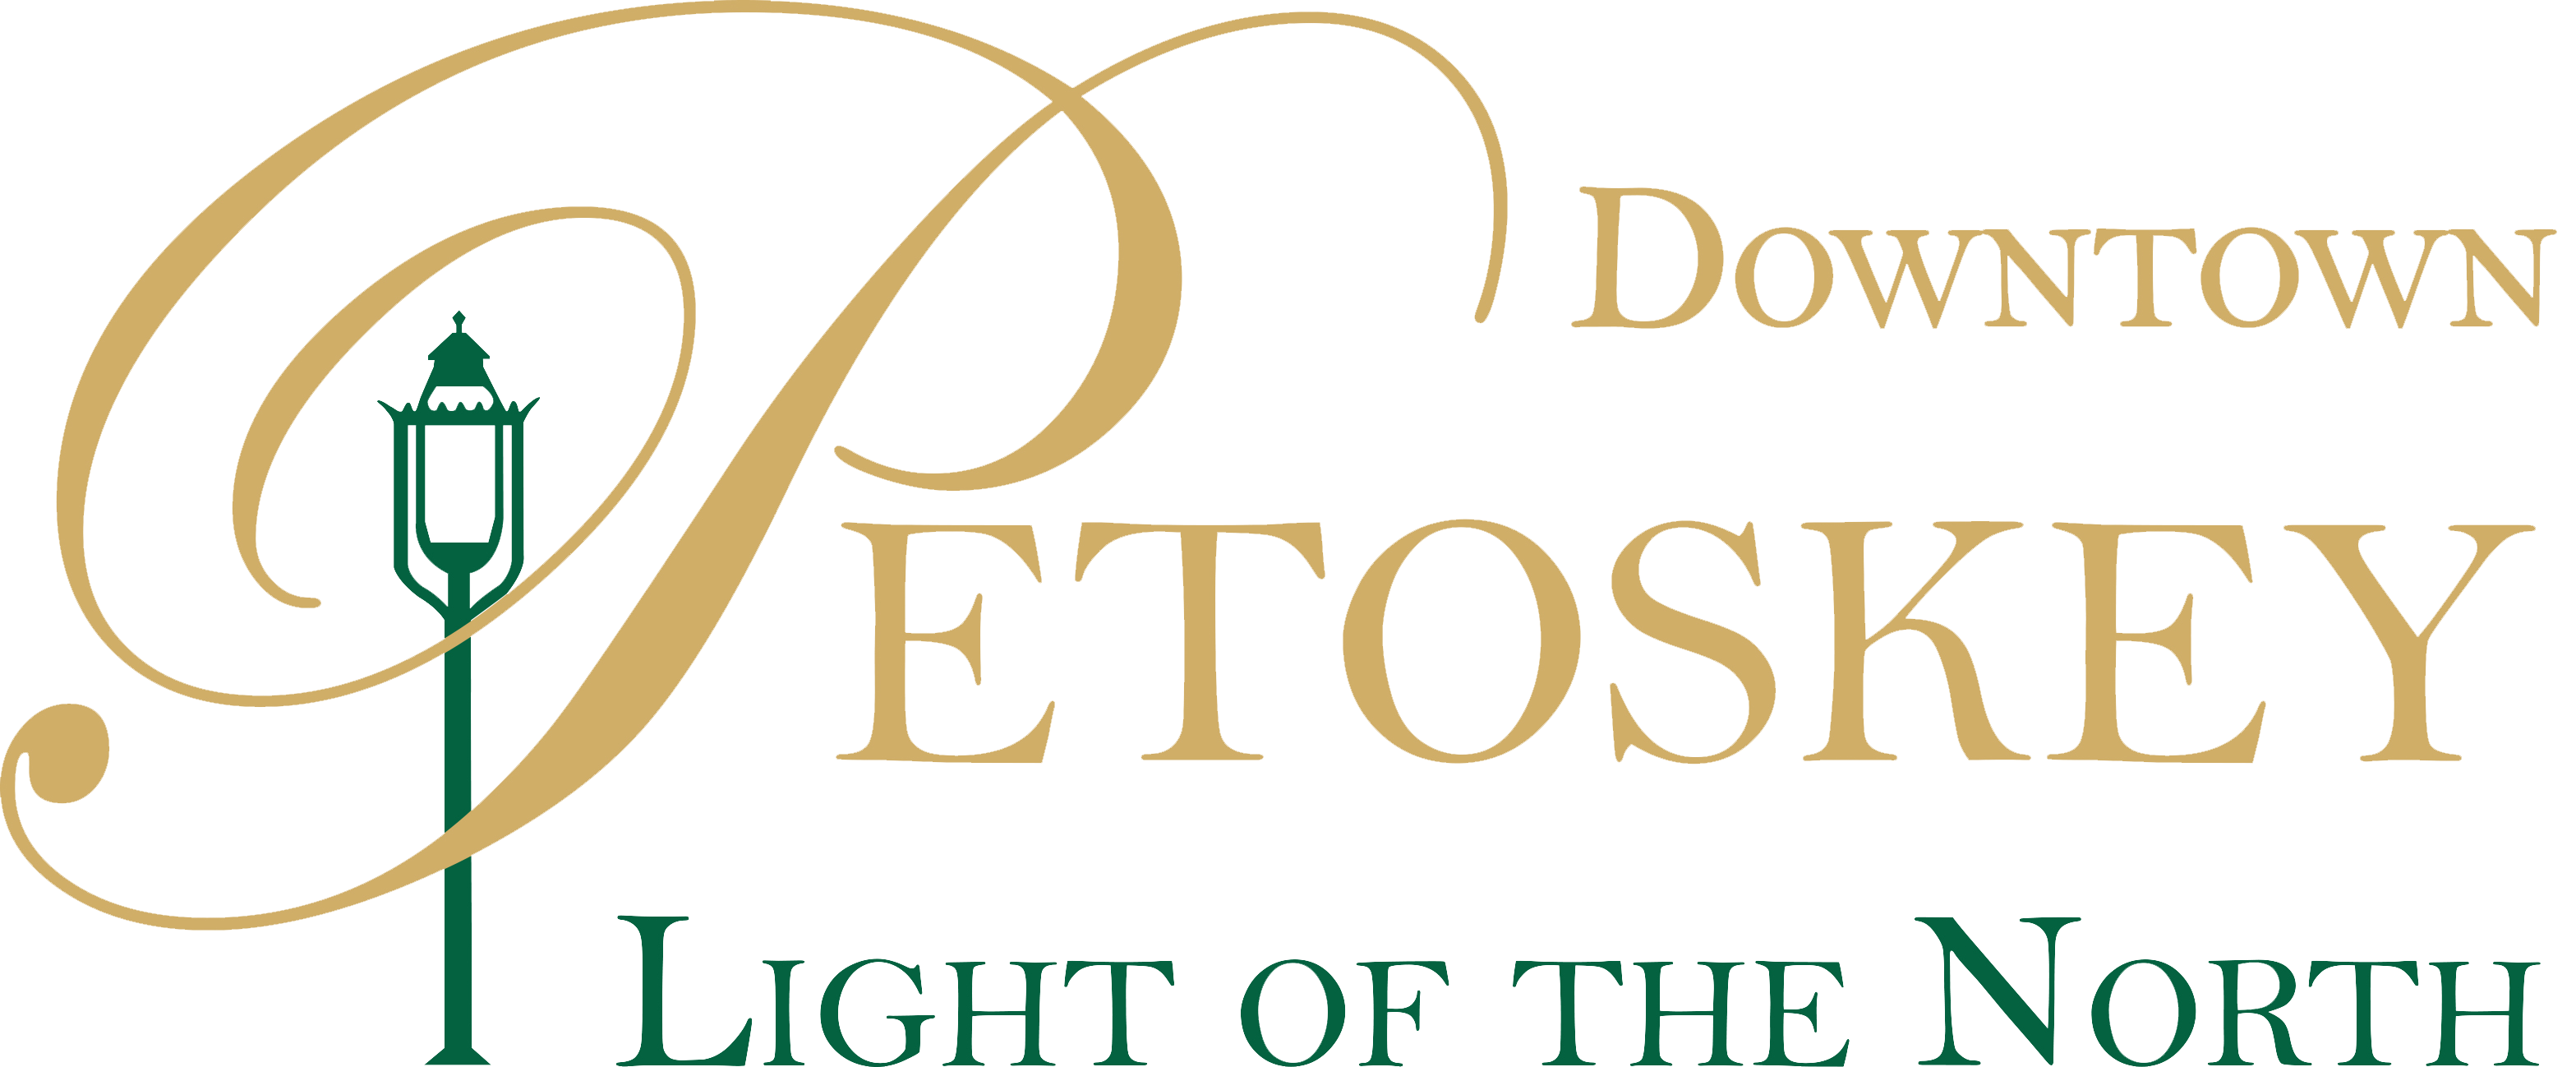 downtown petoskey logo